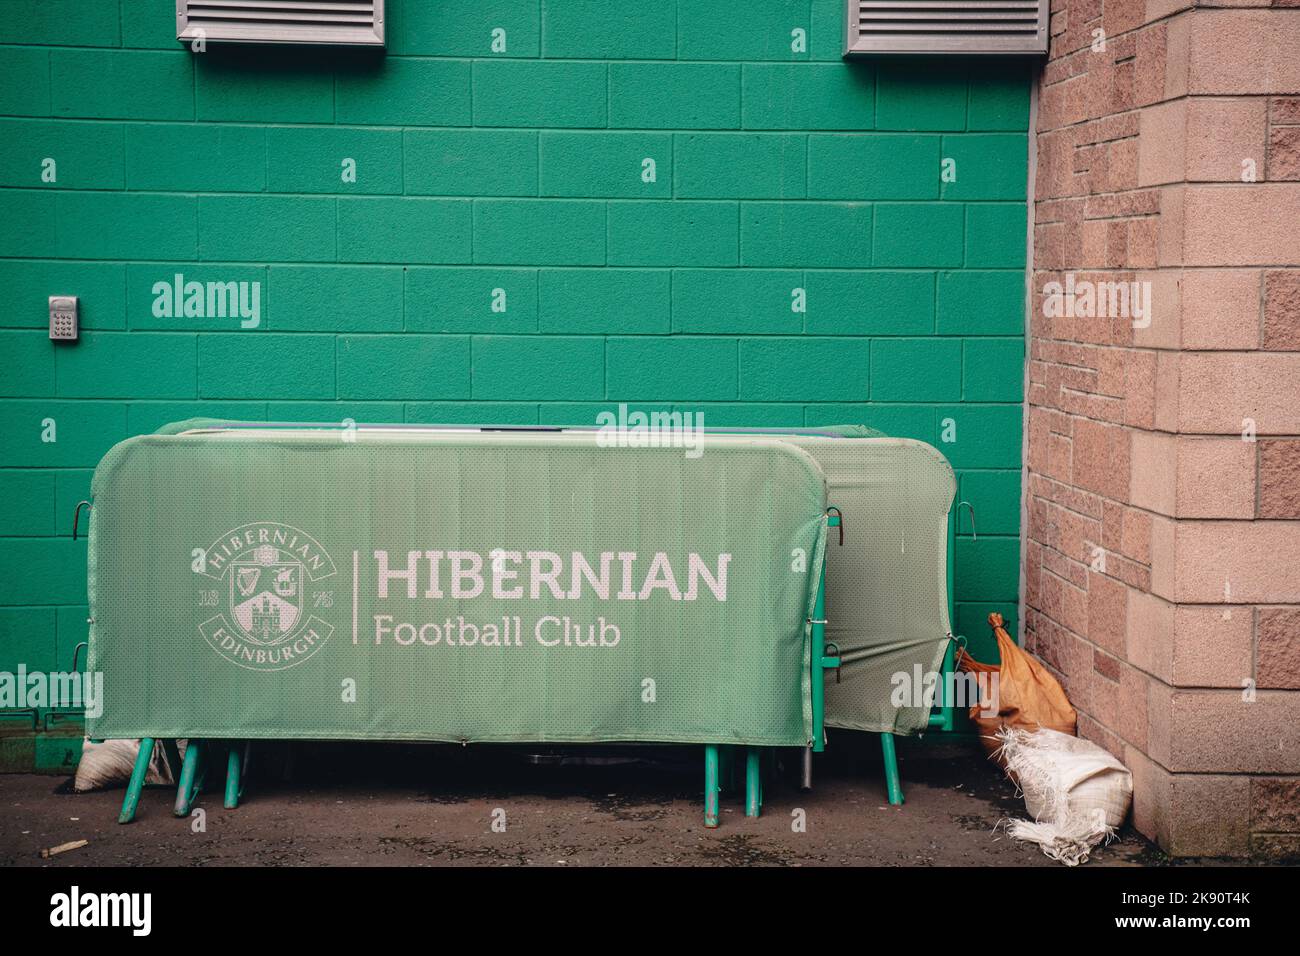 Der Hibernian Football Club ist ein professioneller Fußballverein aus der Region Leith in Edinburgh, Schottland. Der Verein wurde 1875 gegründet. Stockfoto